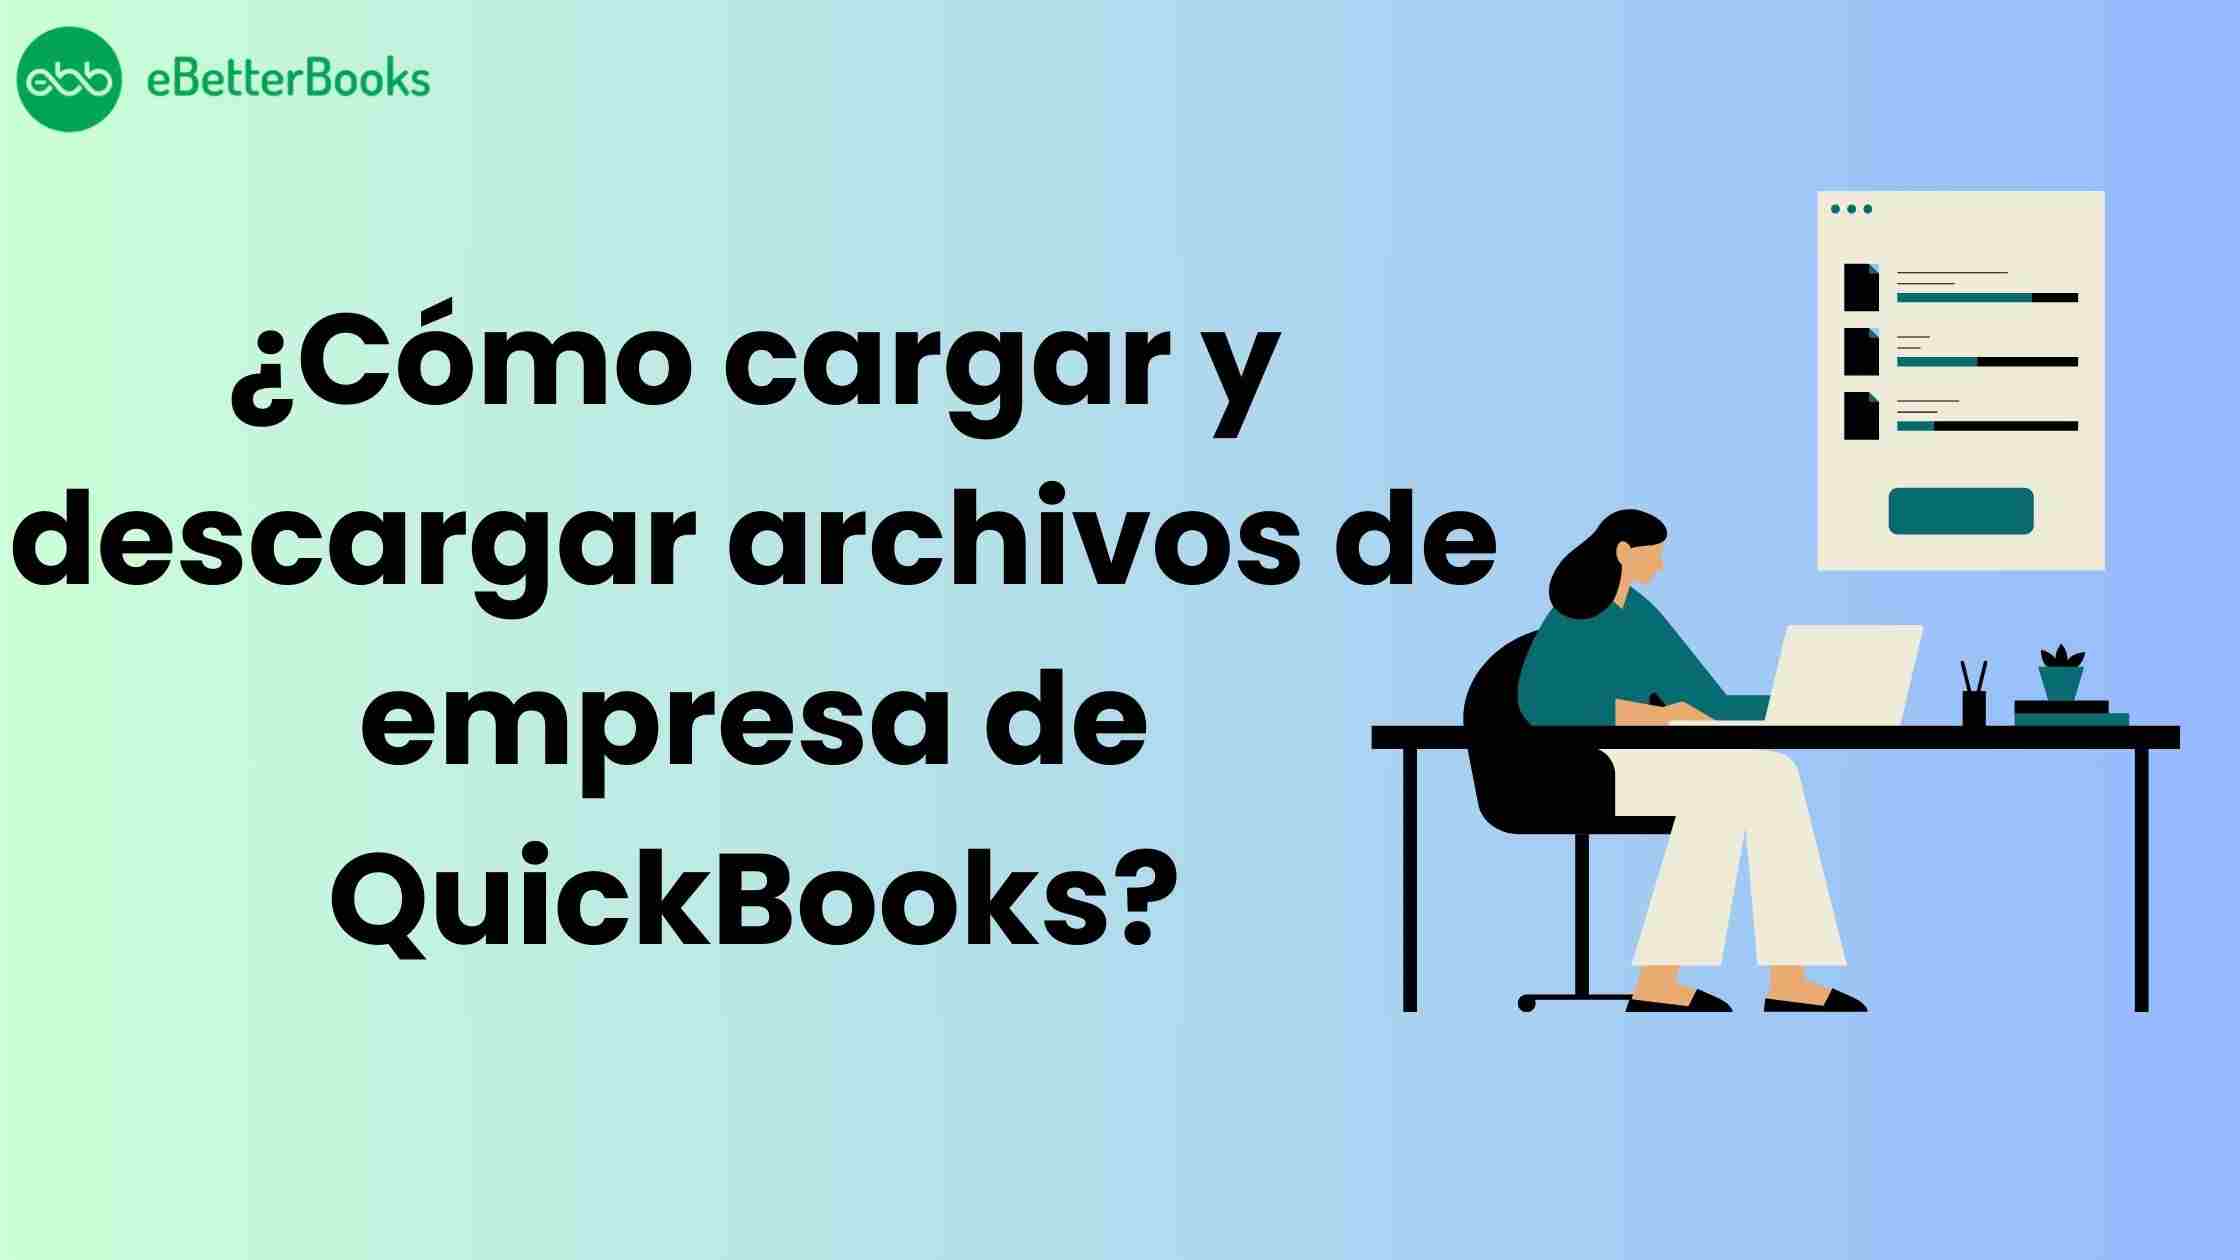 ¿Cómo cargar y descargar archivos de empresa de QuickBooks?